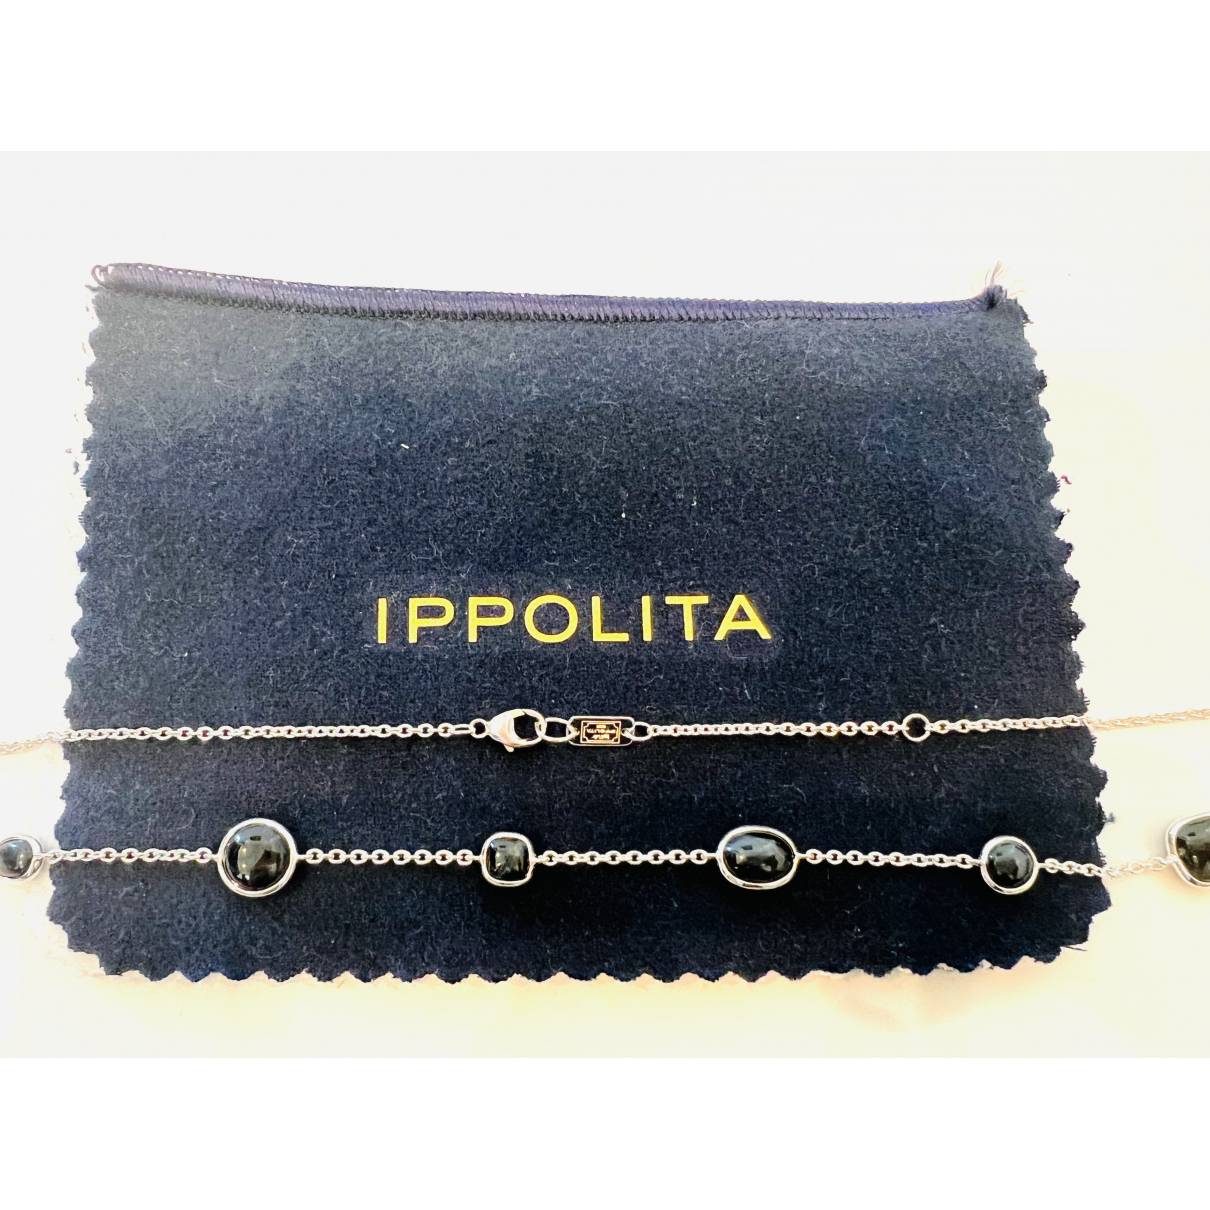 Luxury Ippolita Necklaces Women